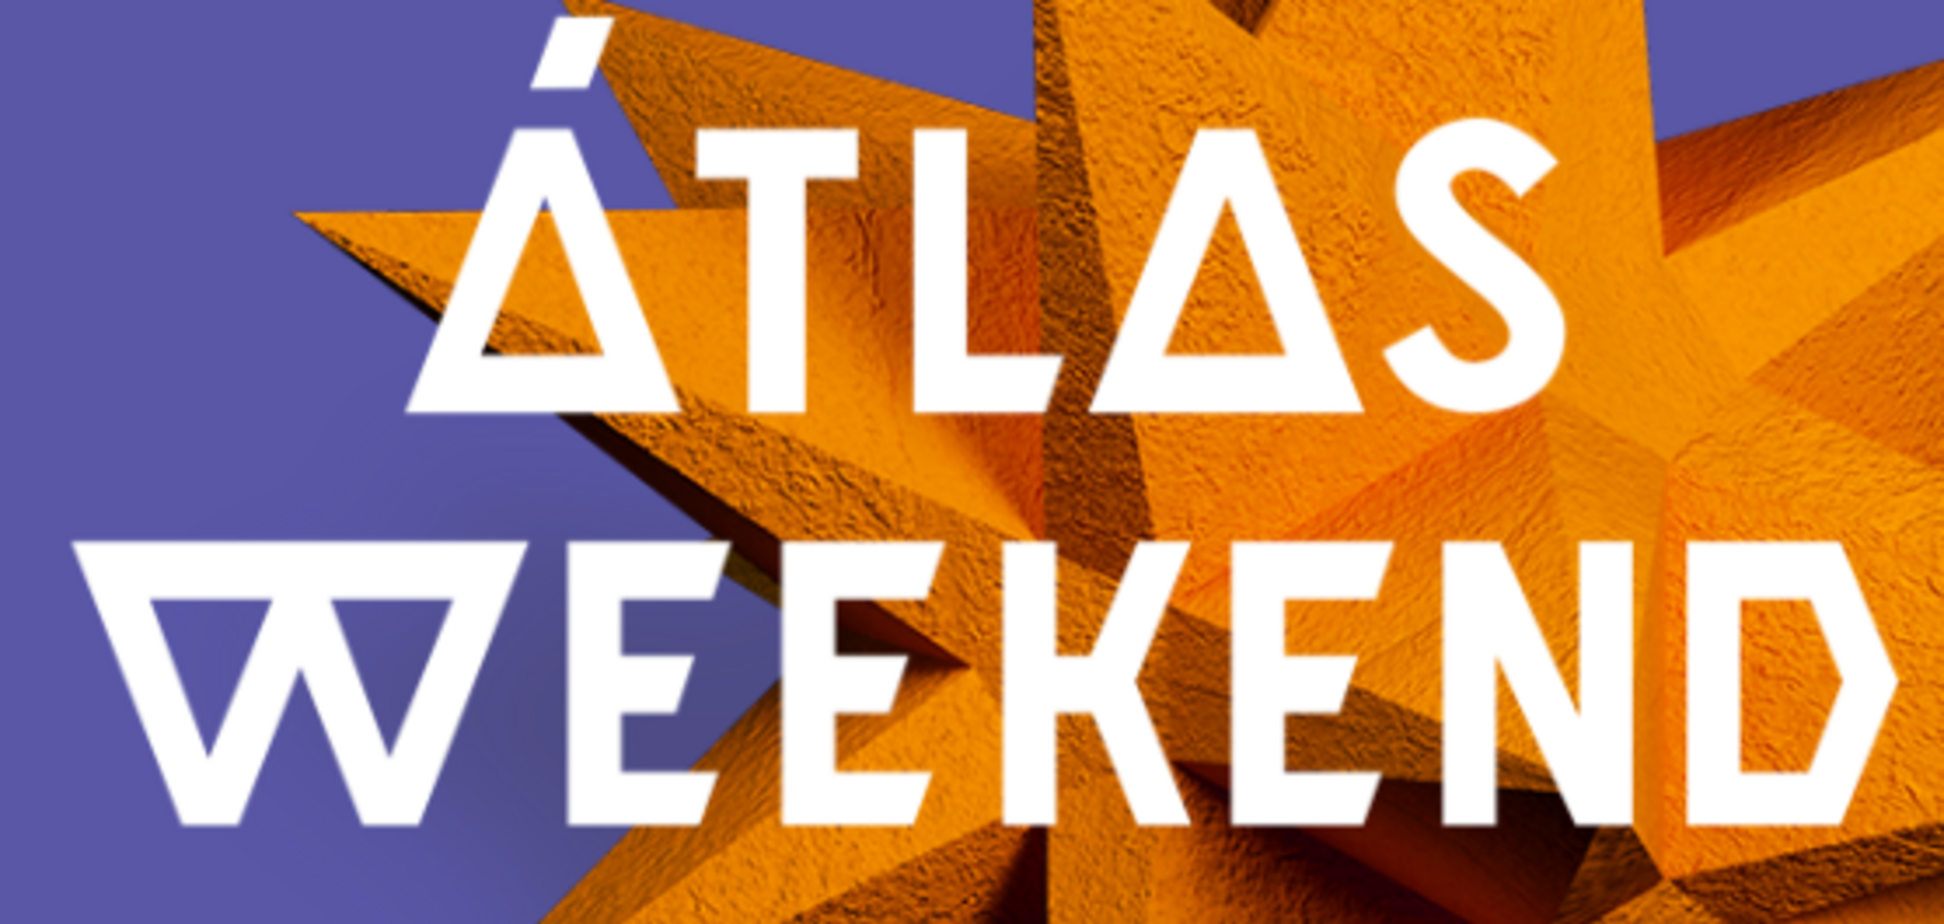 Atlas Weekend-2019: как грамотно отрываться на музыкальных фестивалях